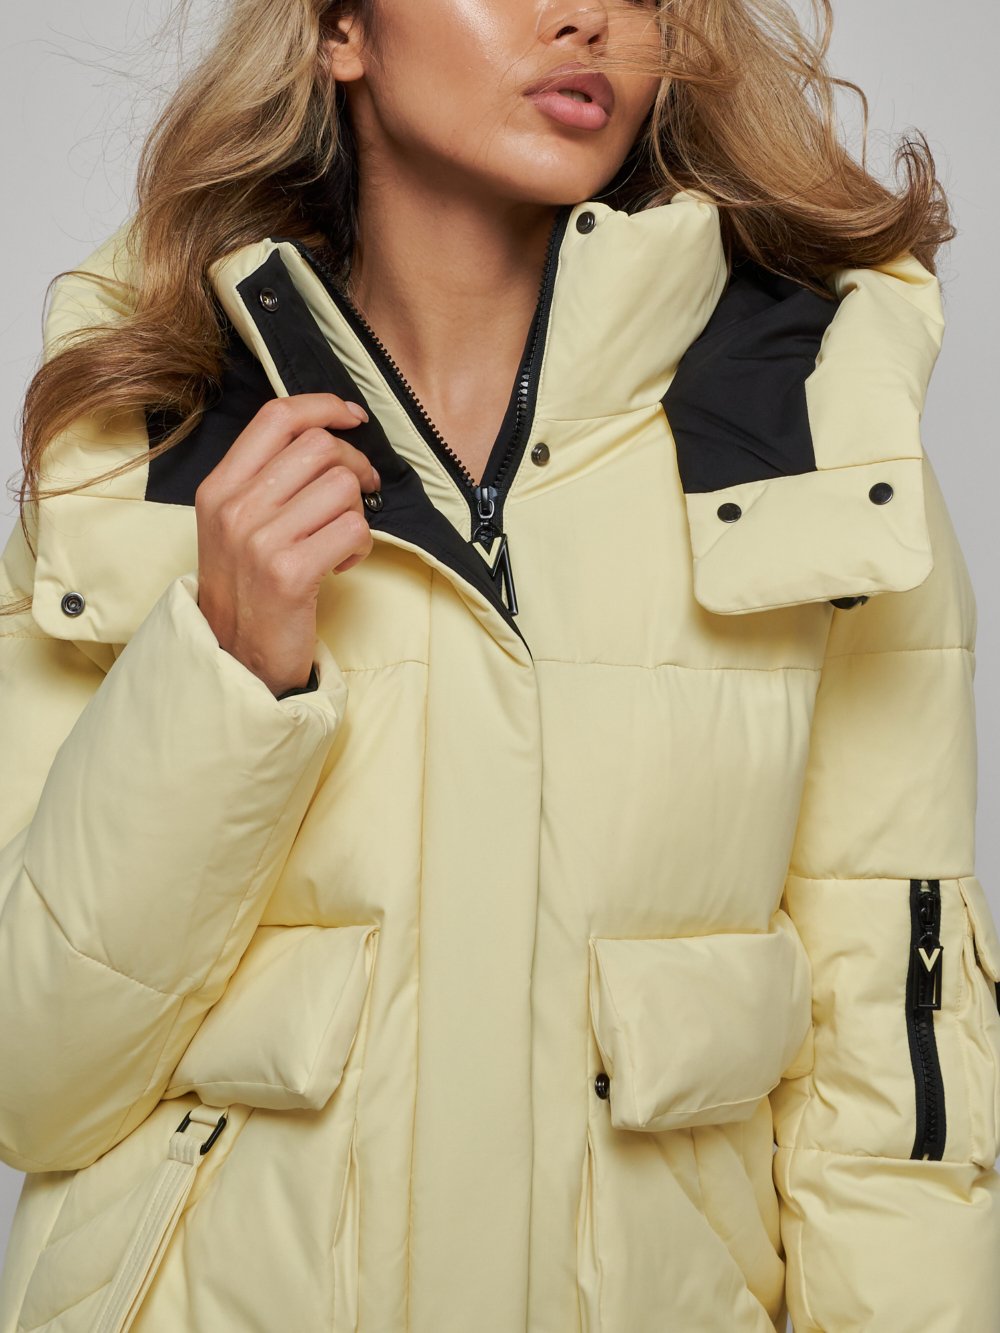 Купить куртку зимнюю оптом от производителя недорого в Москве 589827J 1